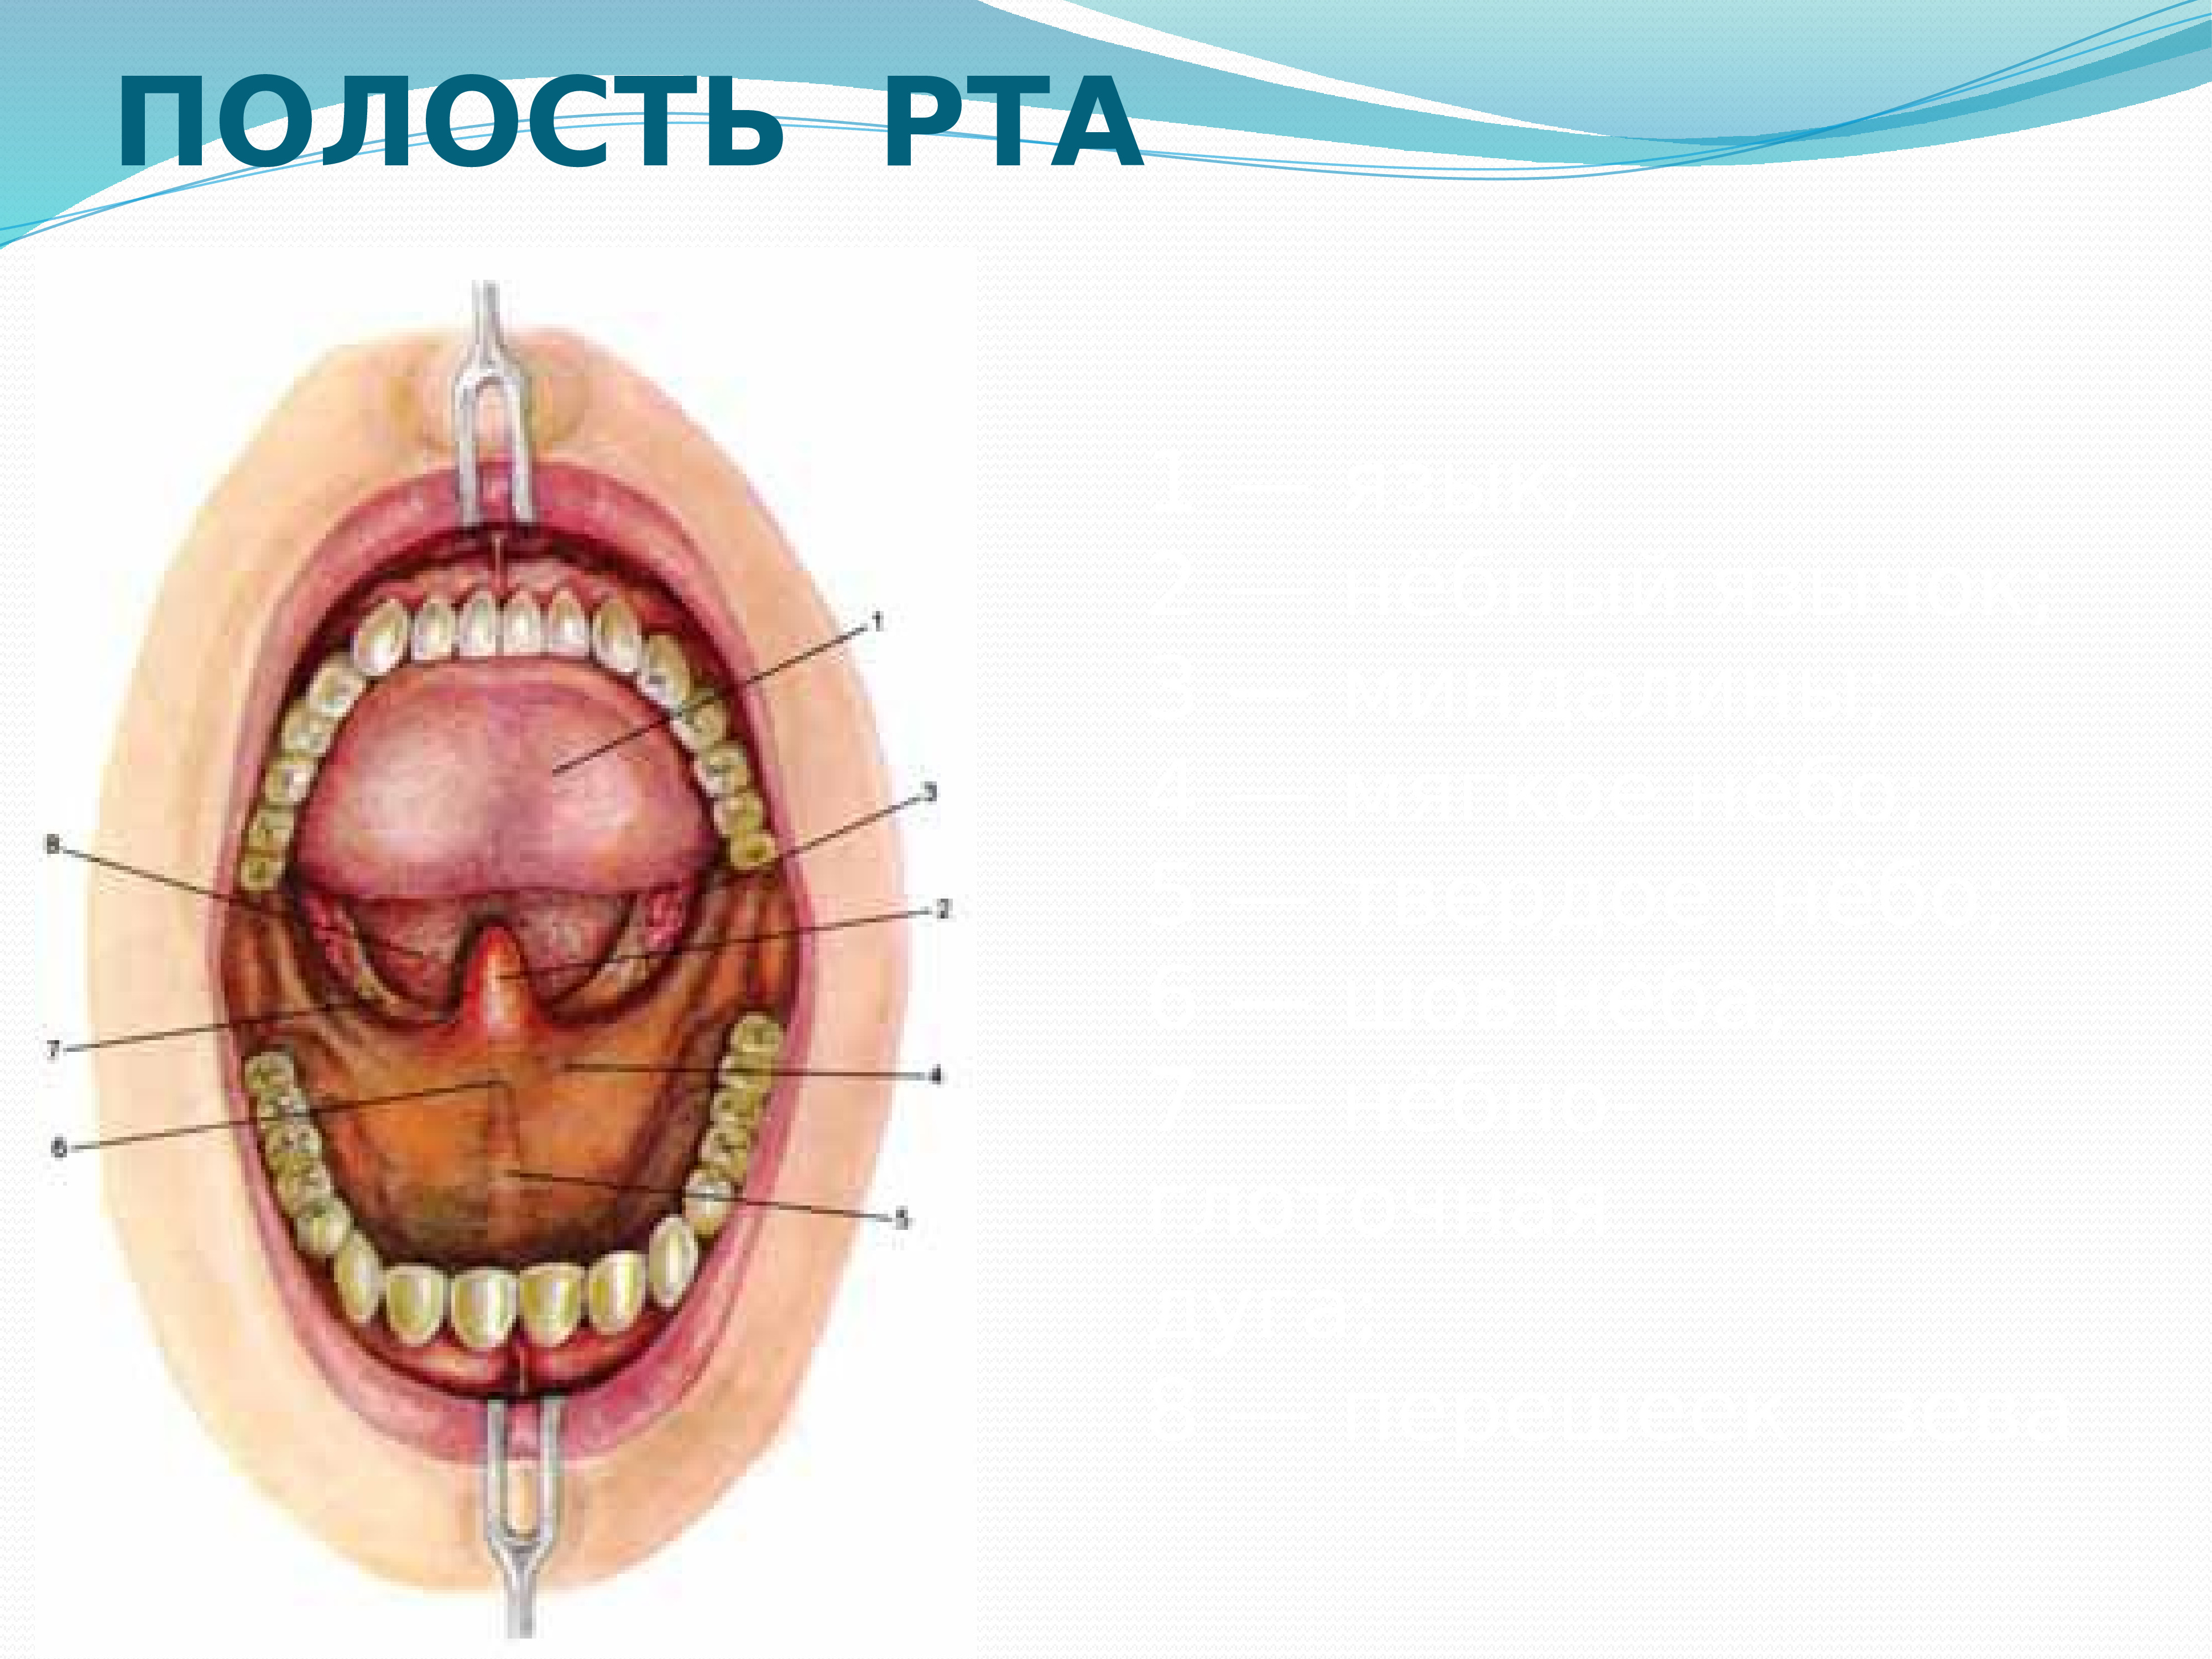 Полость рта кратко. Анатомическое строение ротовой полости. Полость рта вид спереди. Строение внутри полости рта.